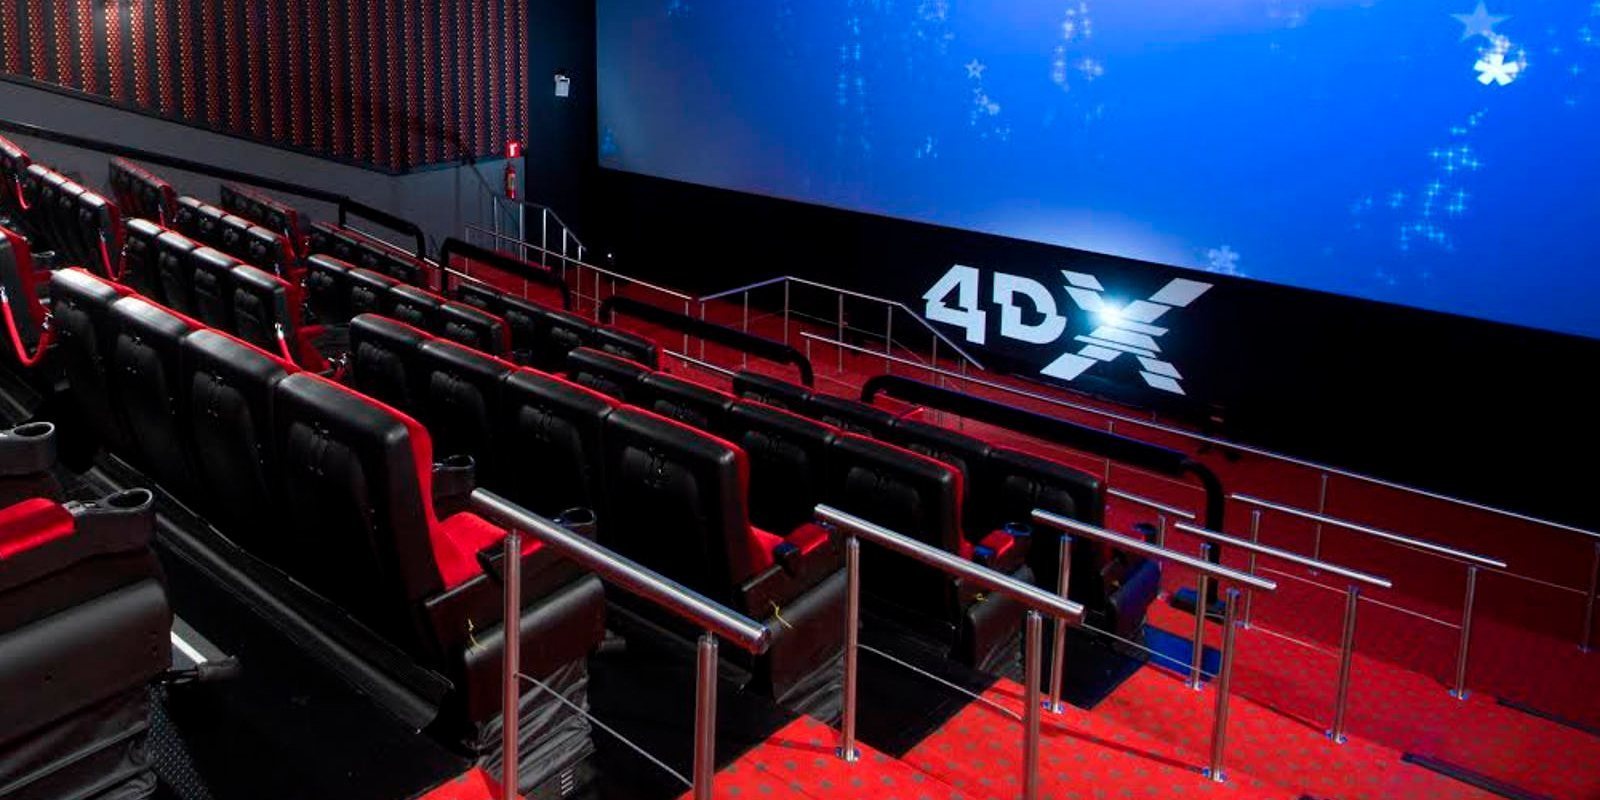 Sony lanzará 13 películas preparadas para la tecnología 4DX en 2019